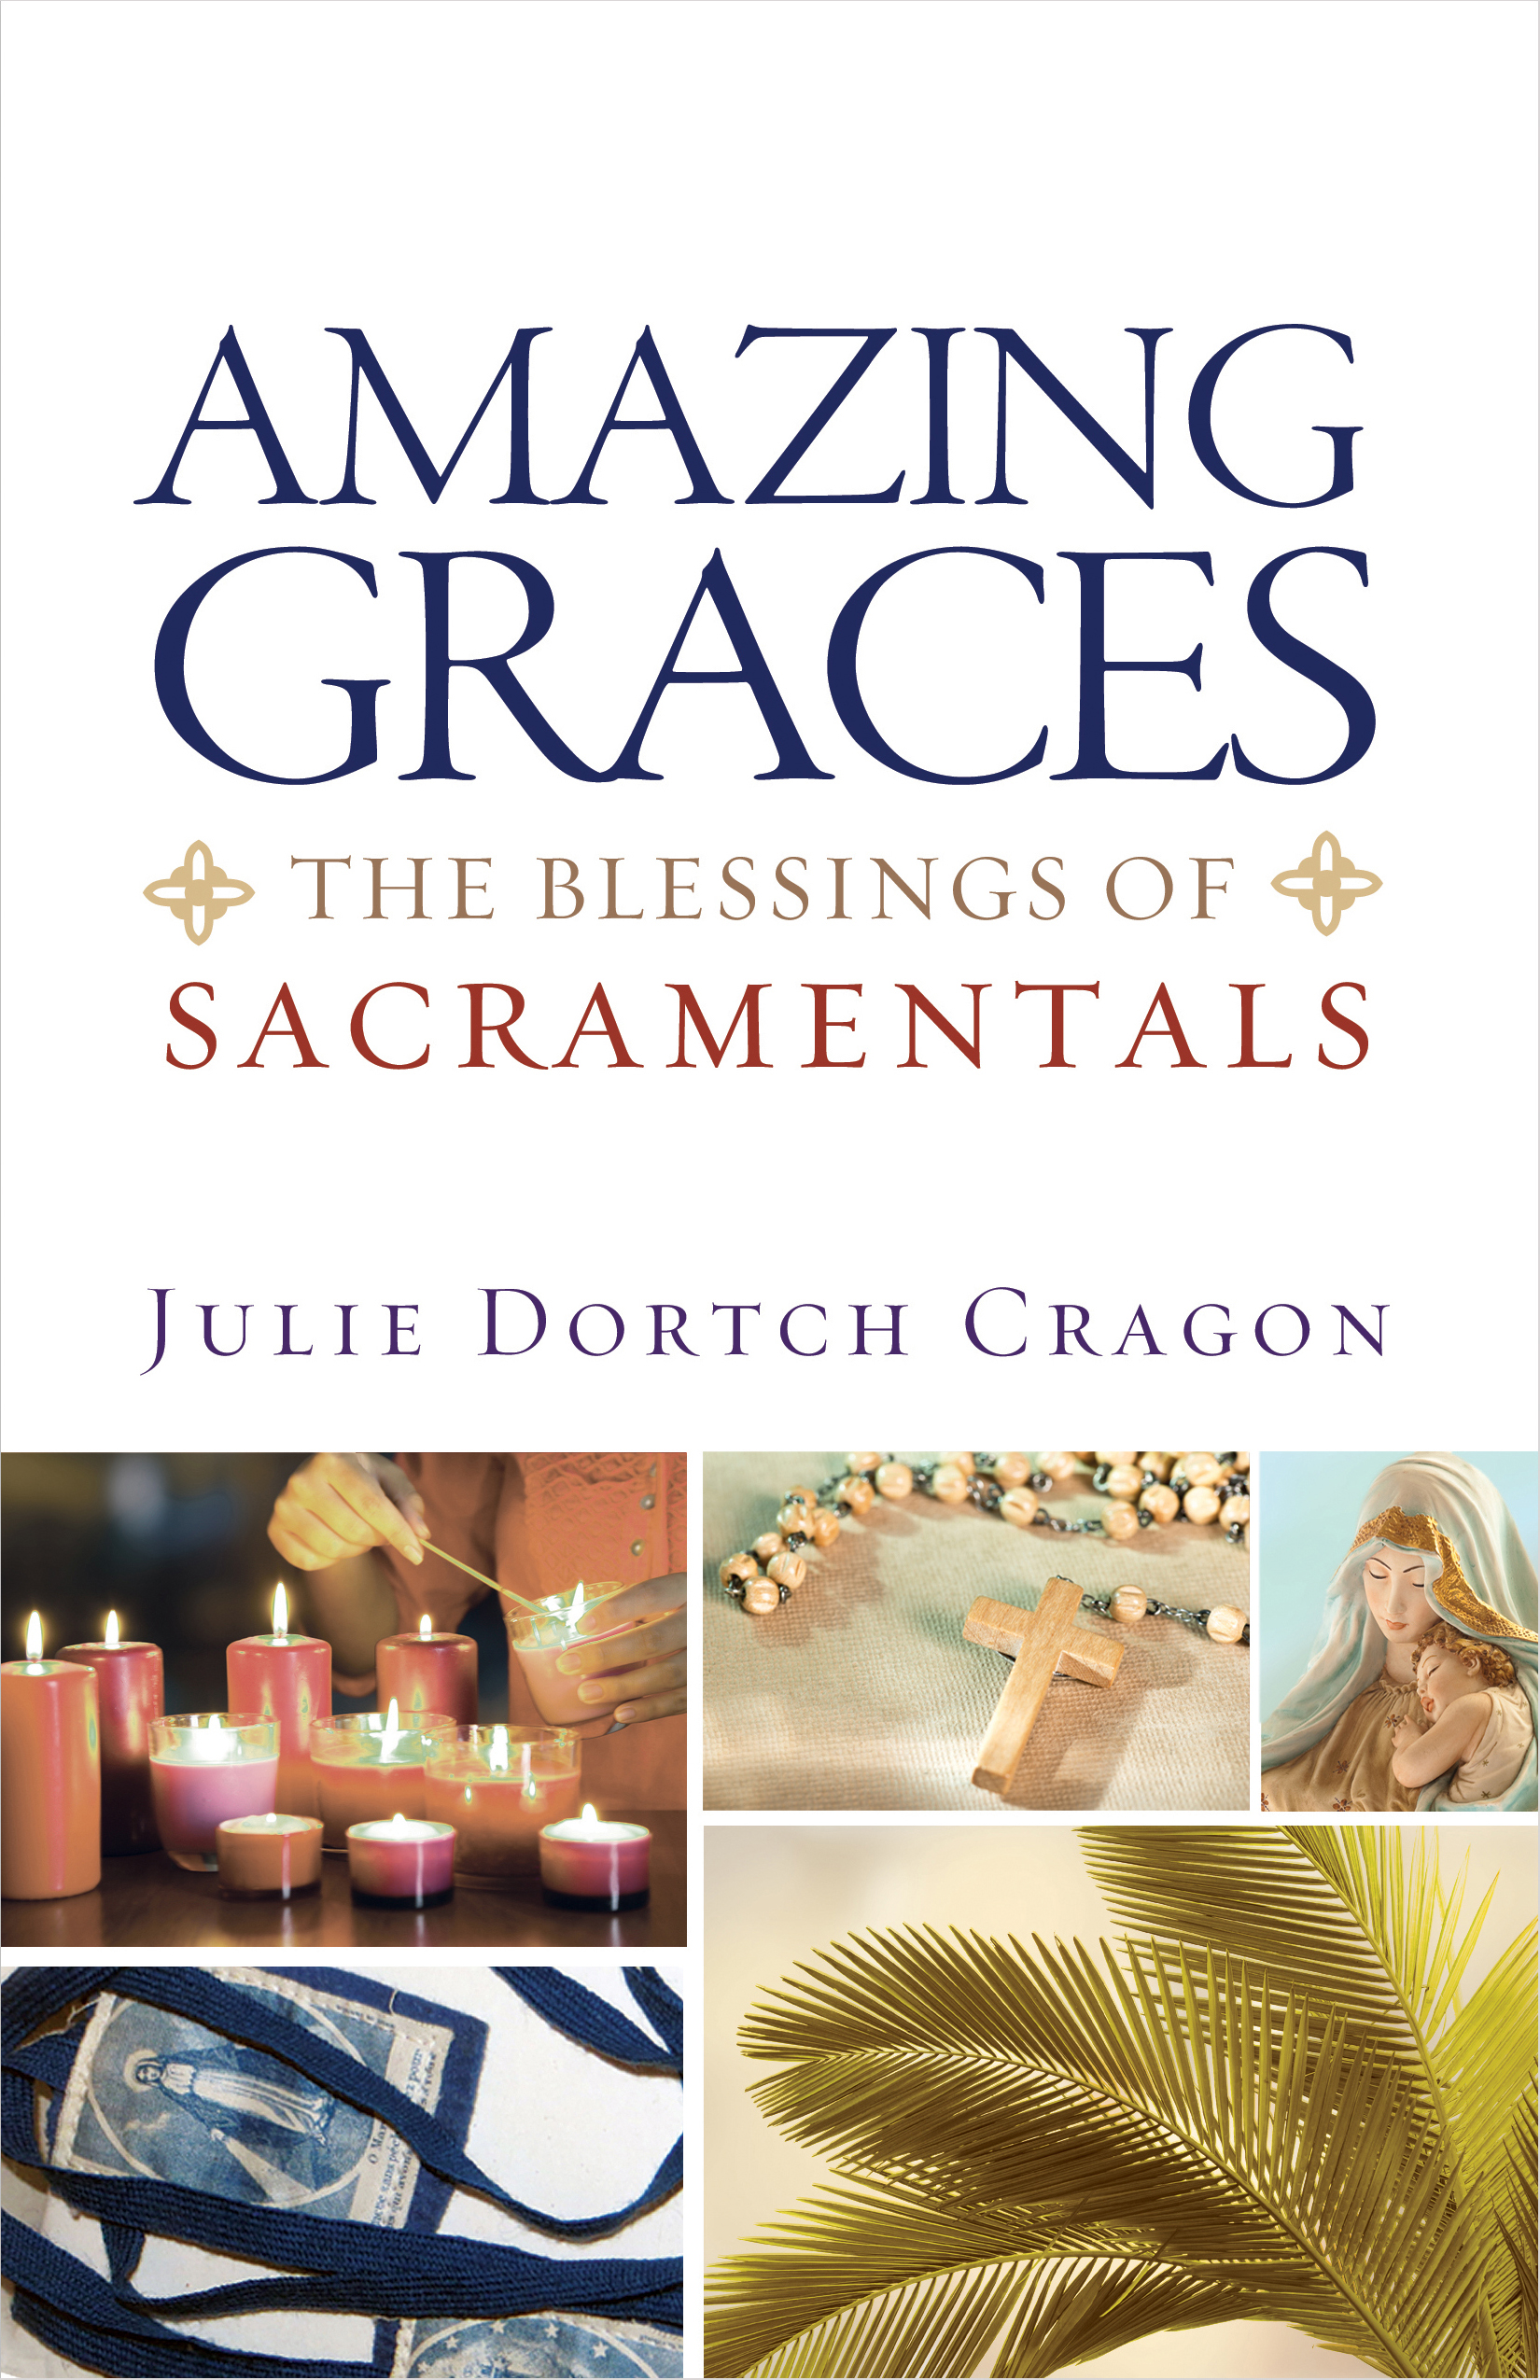 Amazing Graces / Julie Dortch Cragon